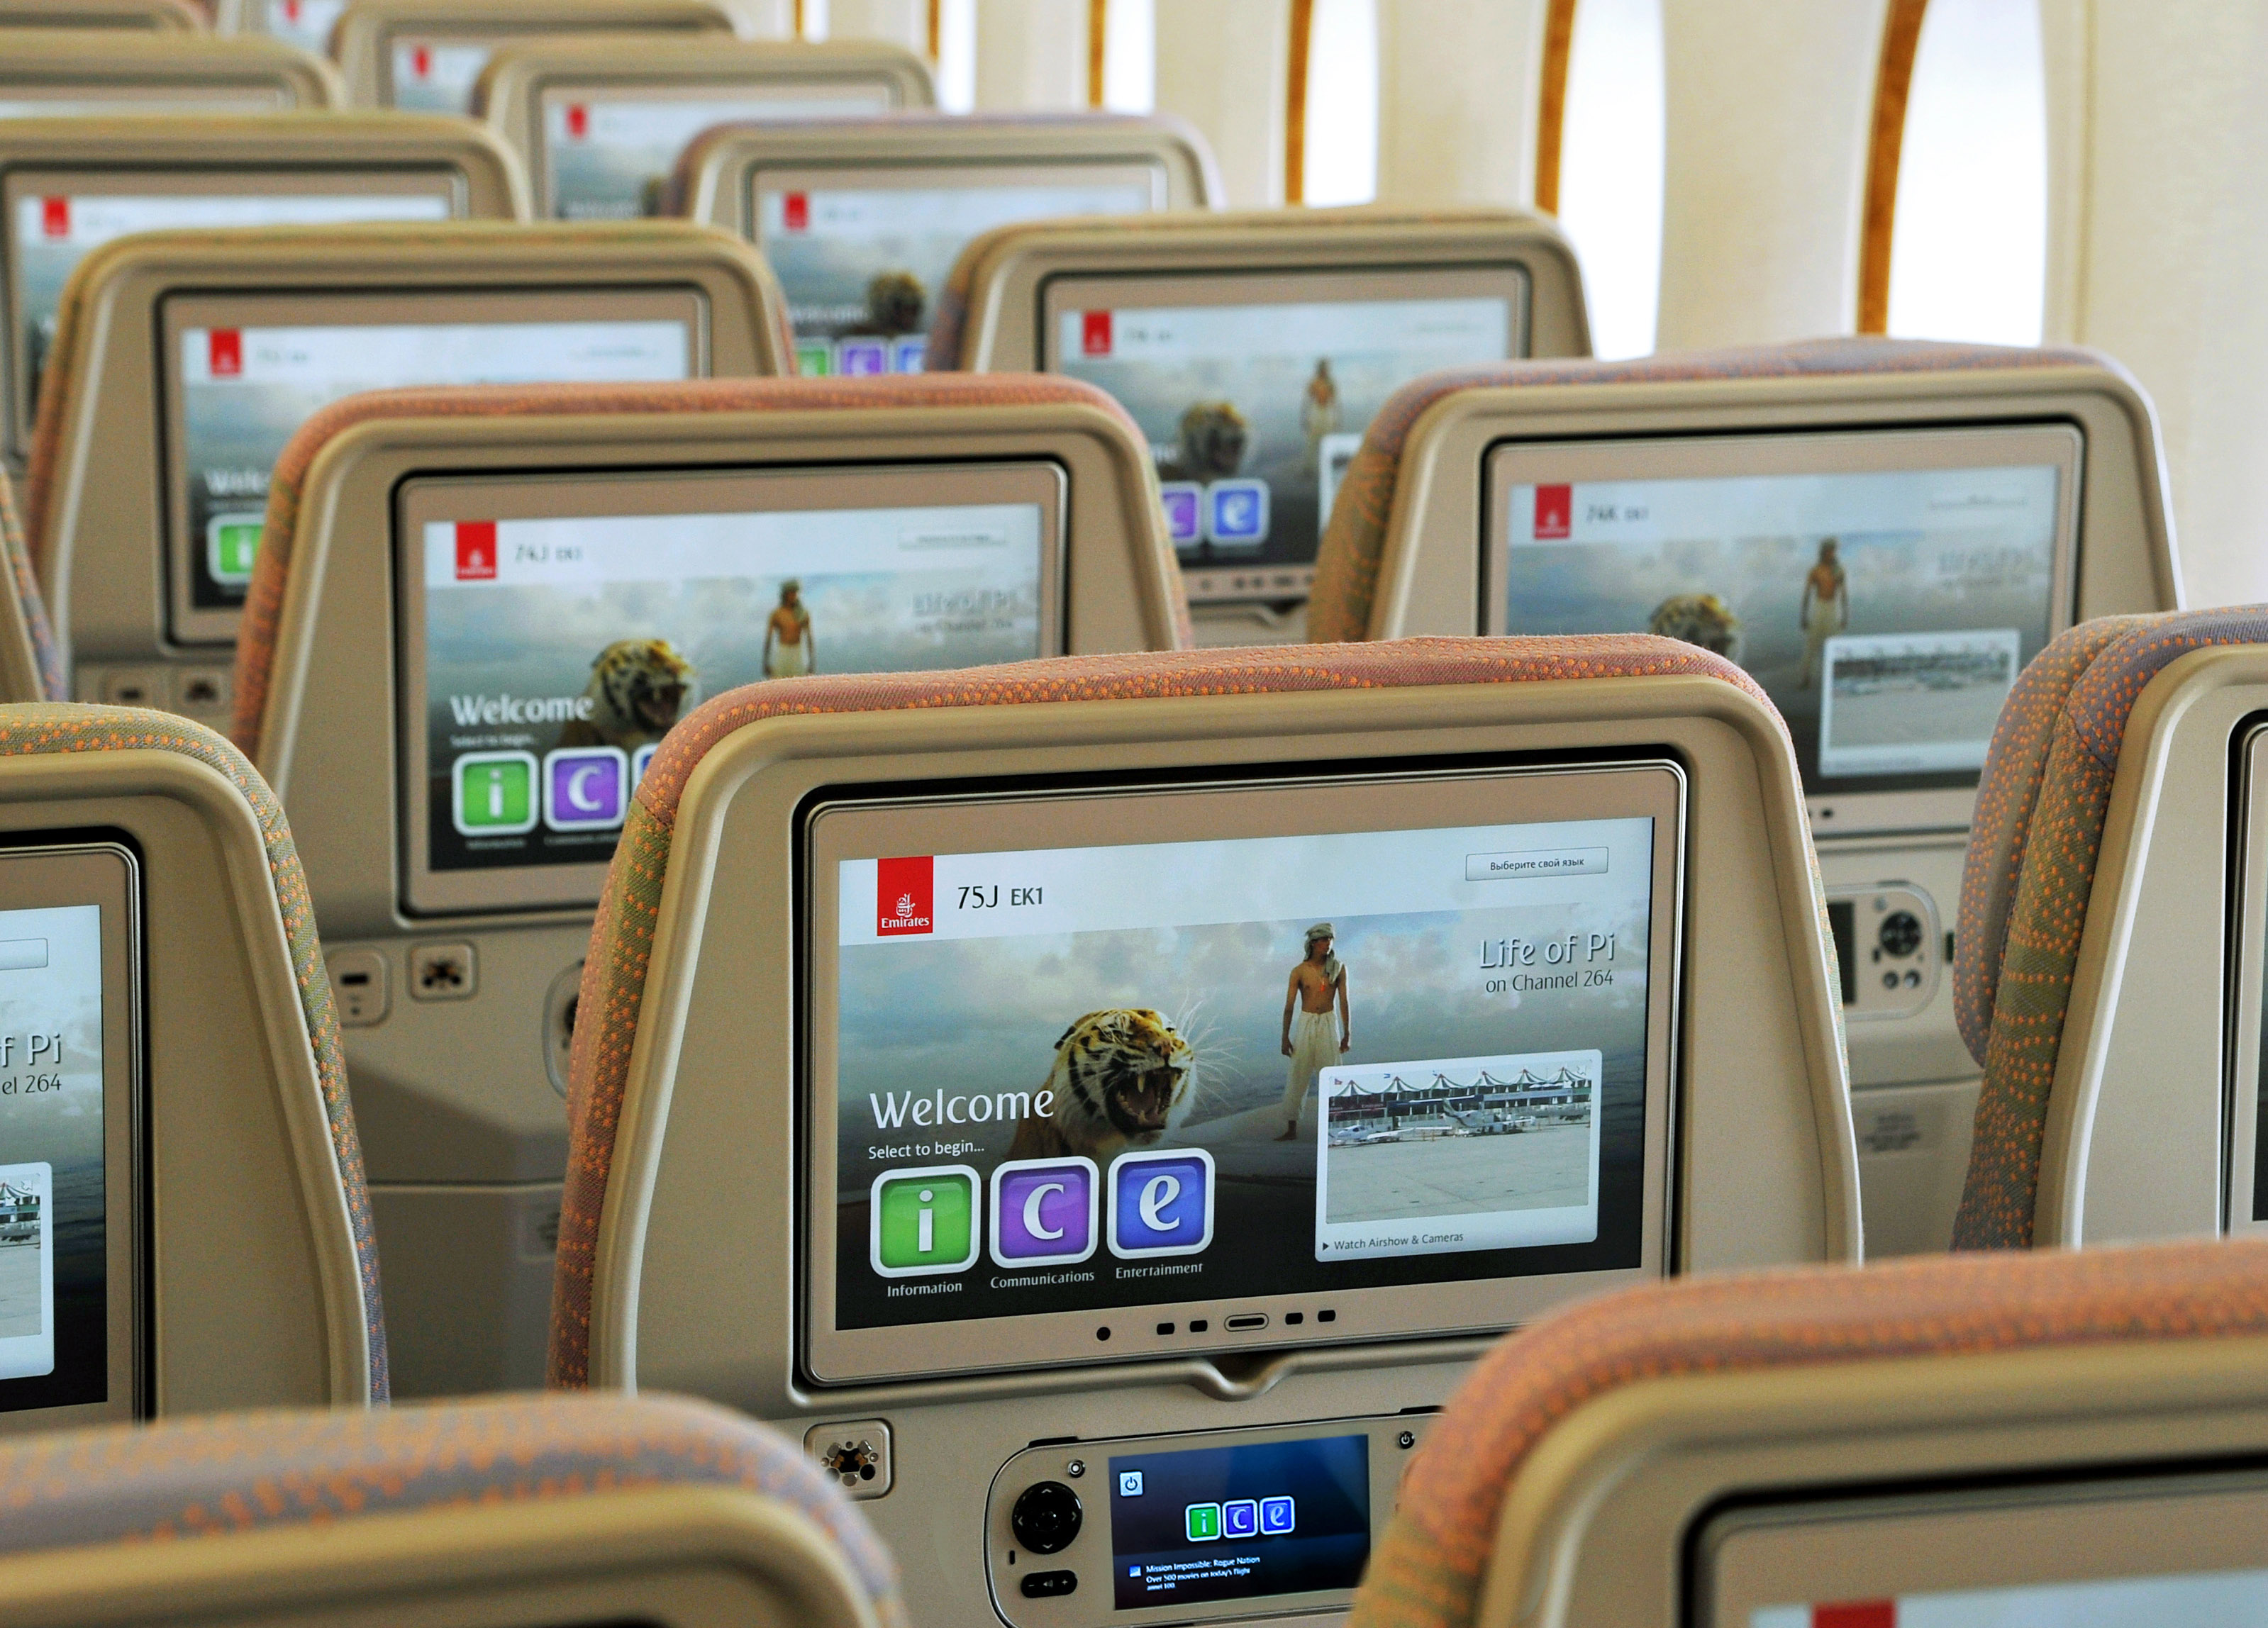 Emirates' IFE screen in Economy class